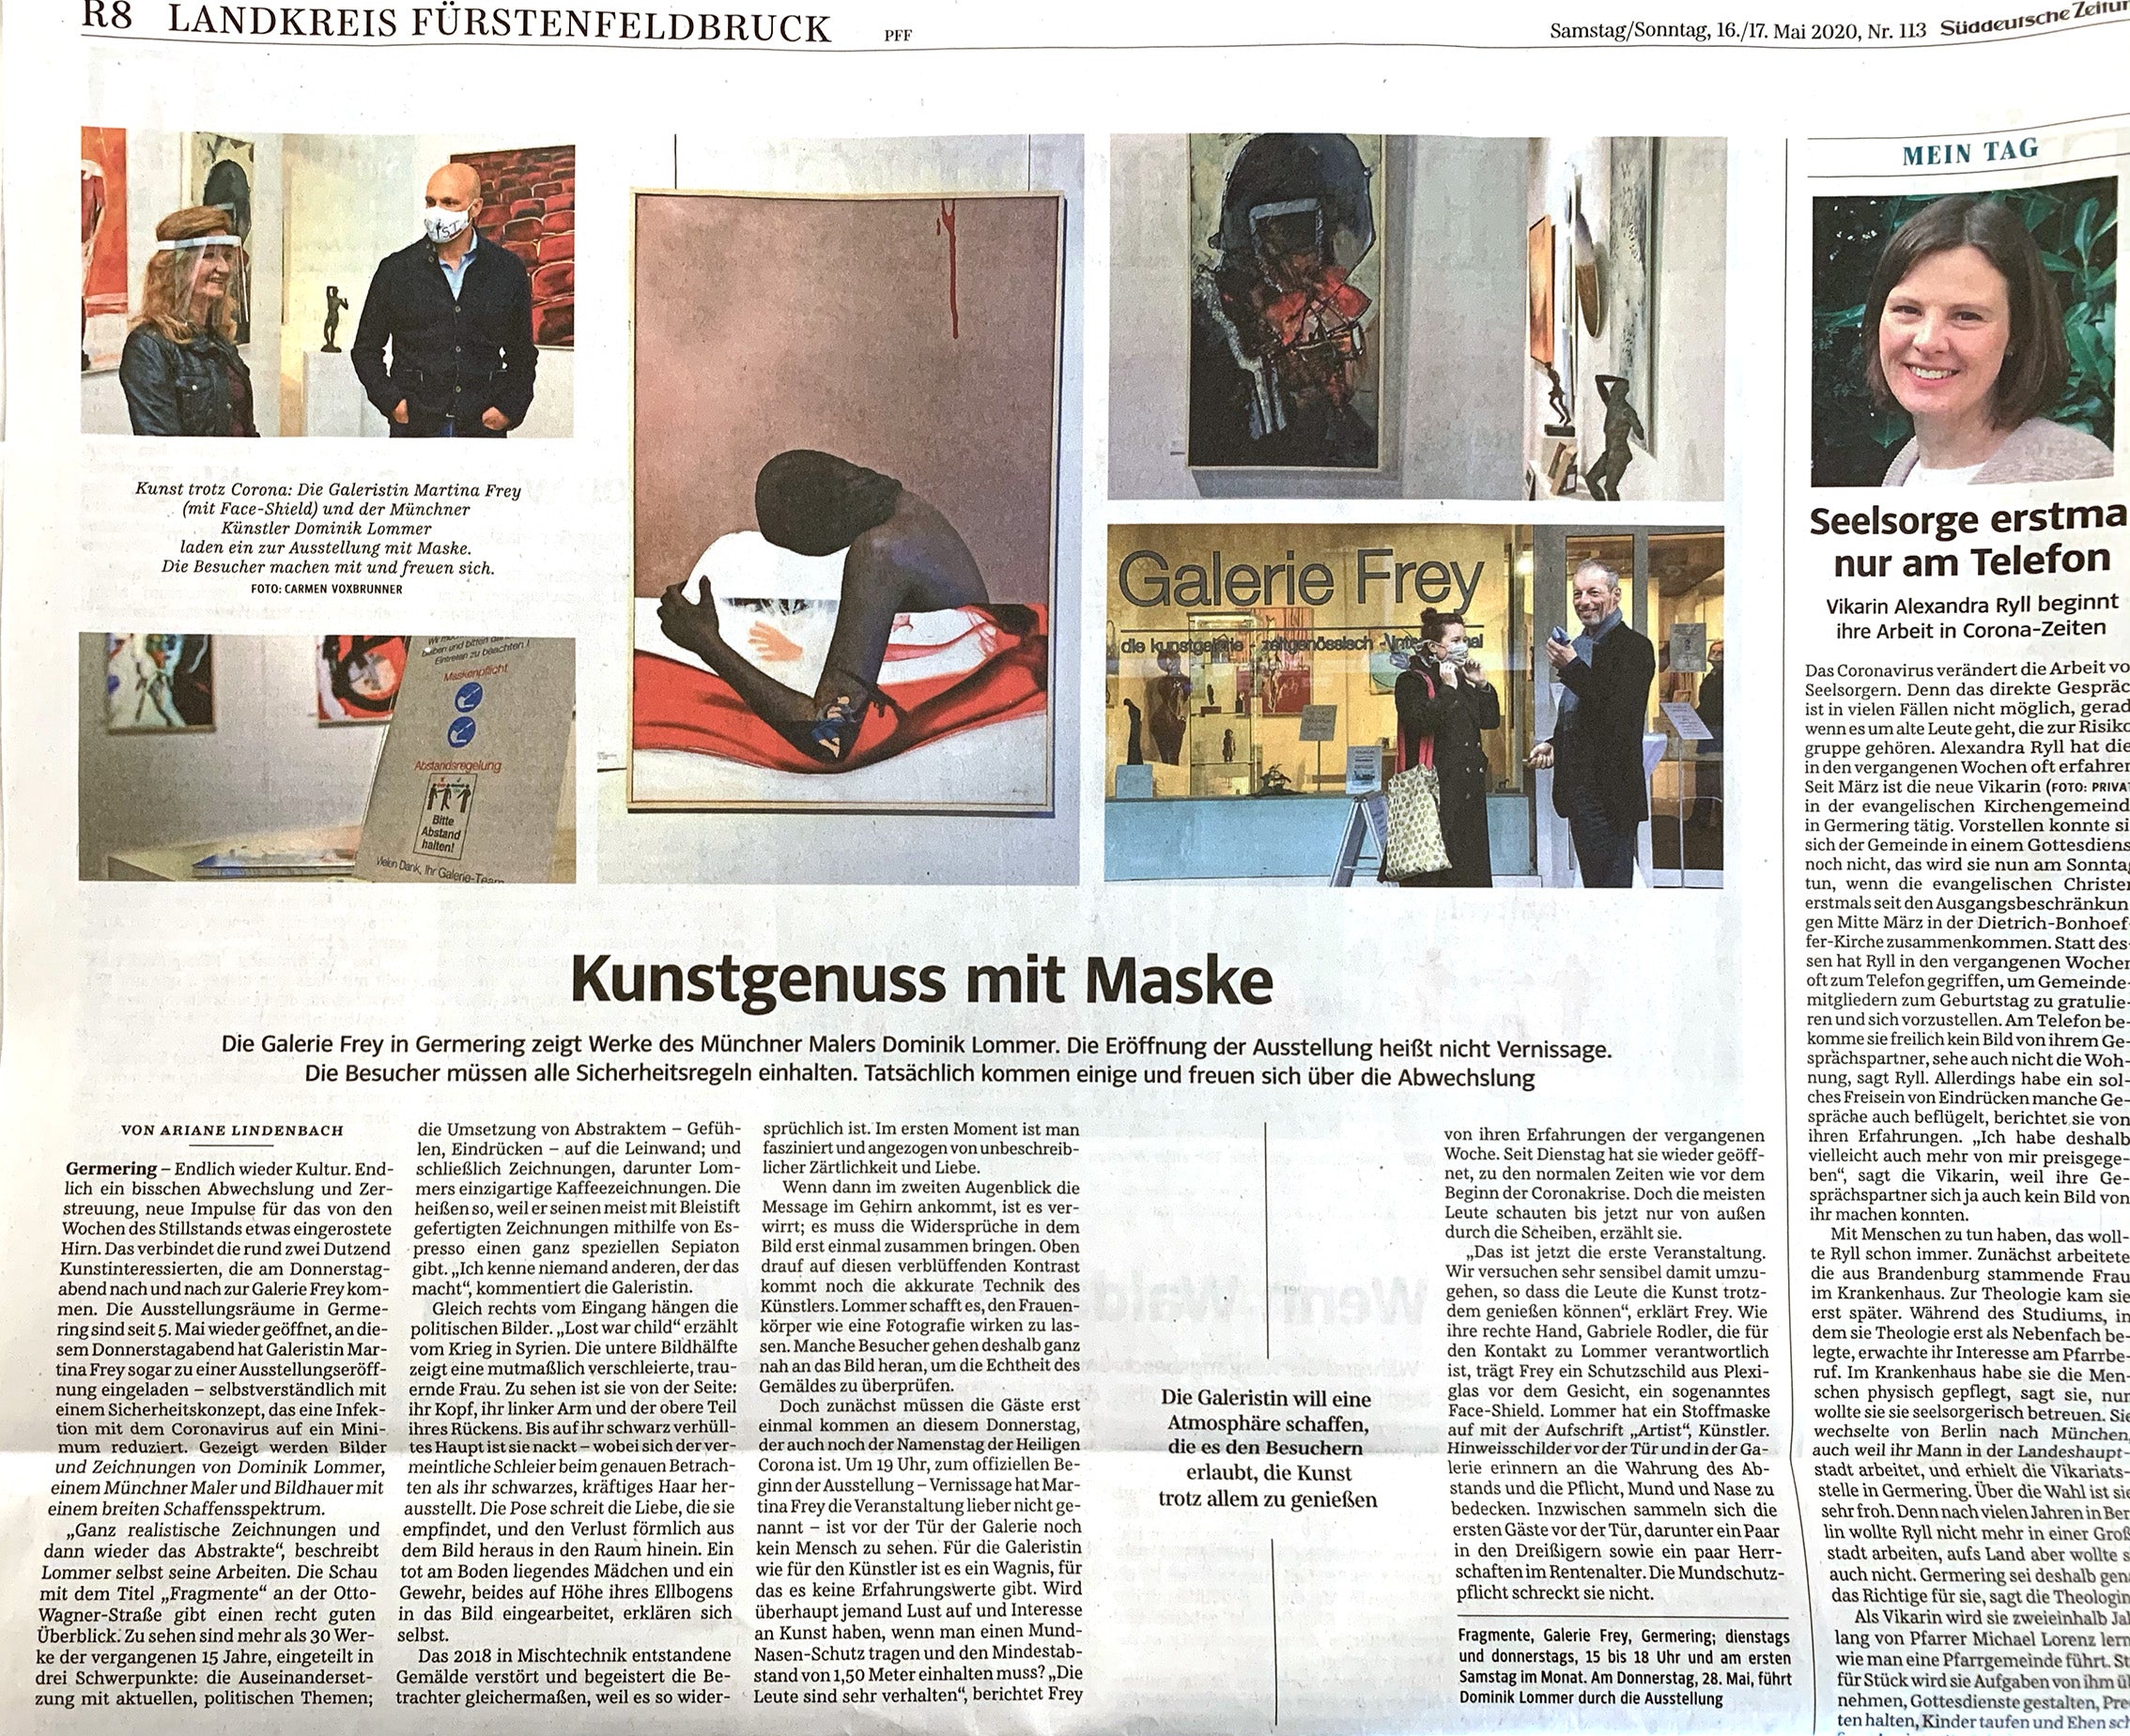 Artikel Süddeutsche Zeitung Dominik Lommer in der Galerie Frey